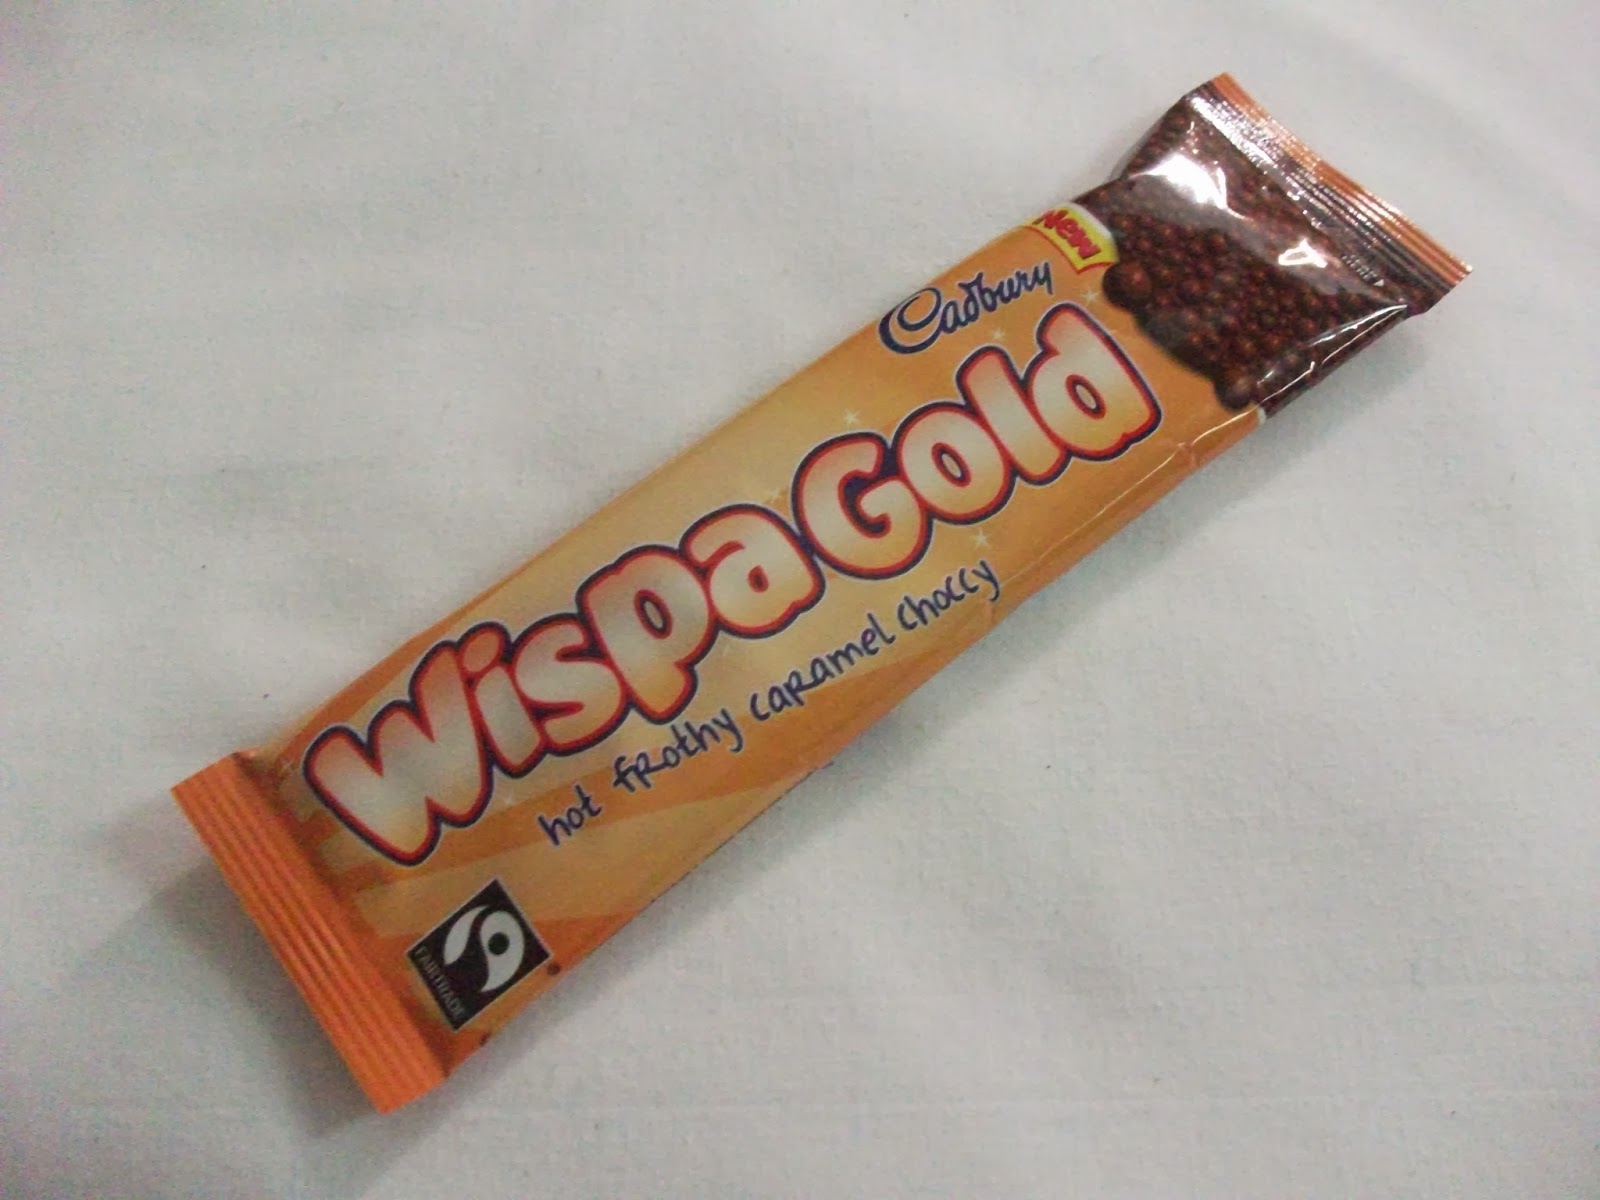 New! Cadbury Wispa Gold Hot Chocolate Review